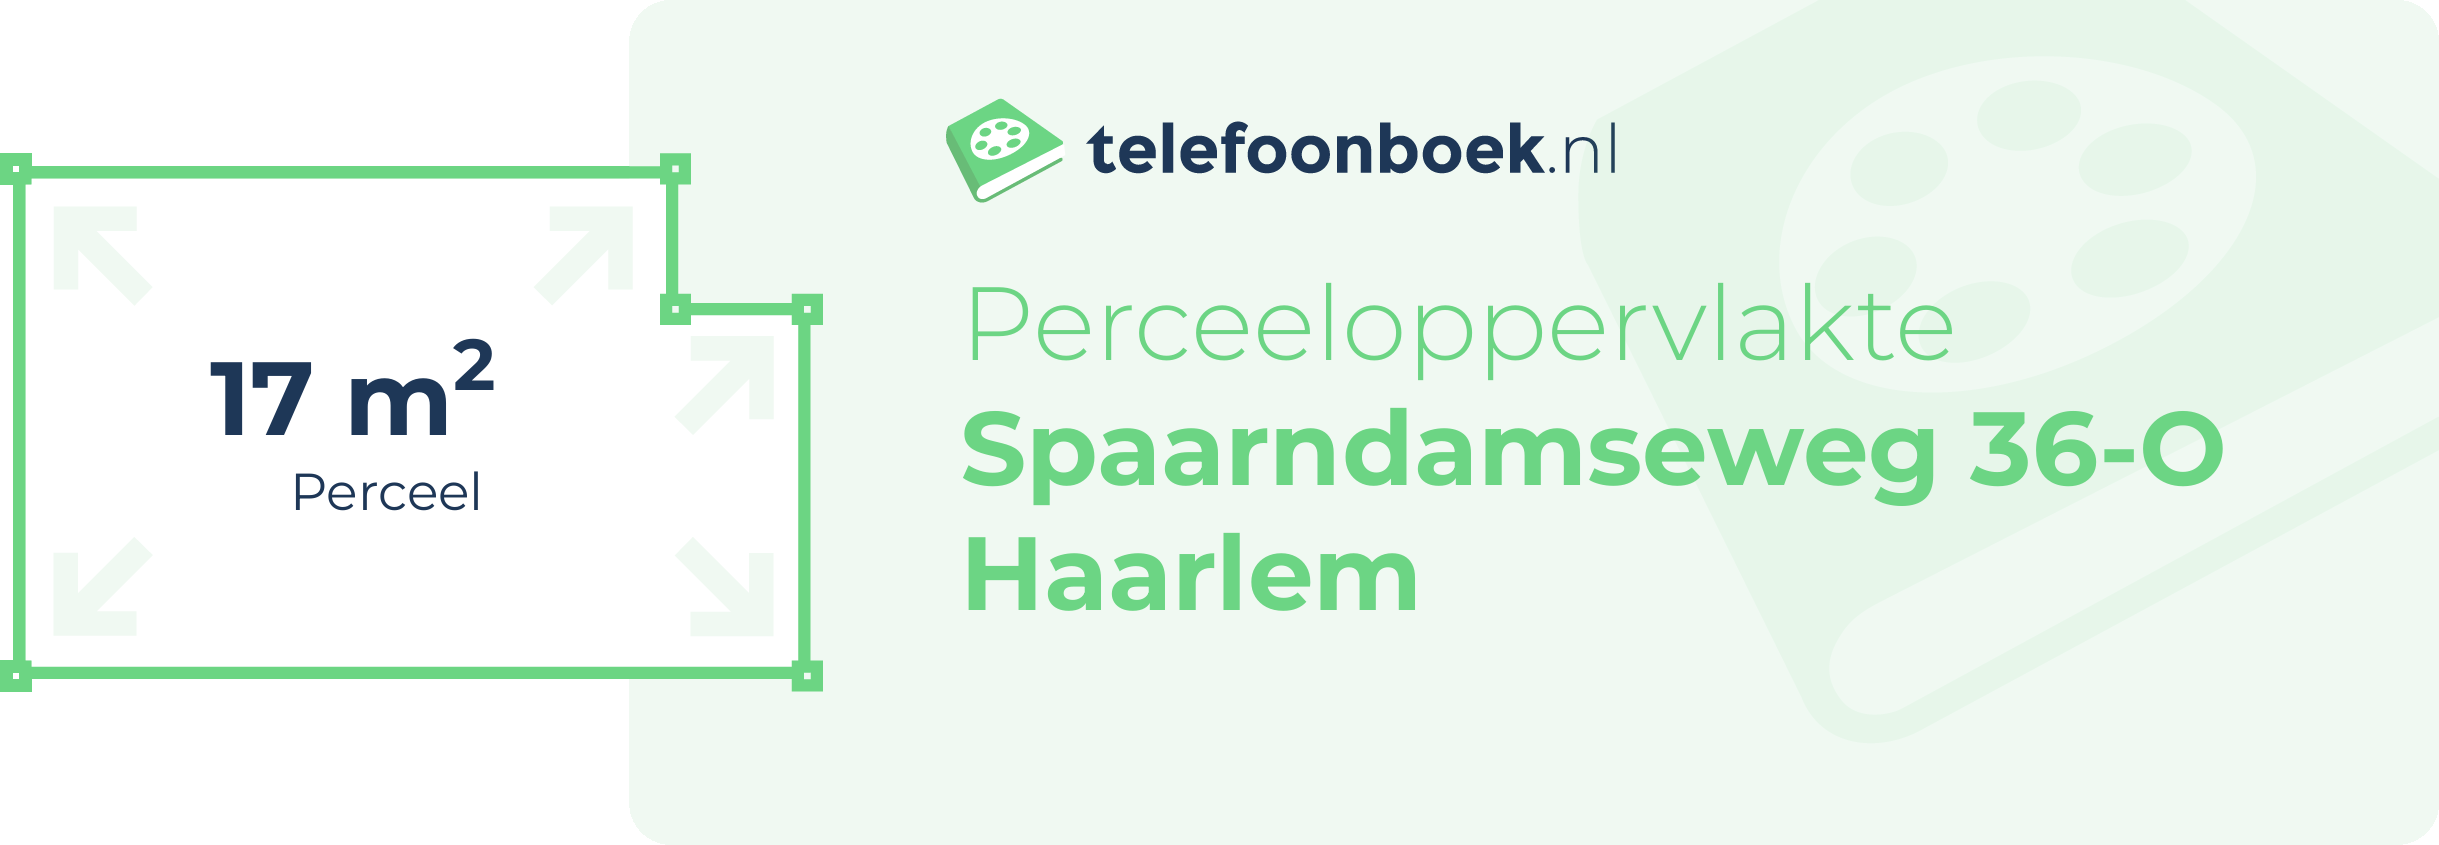 Perceeloppervlakte Spaarndamseweg 36-O Haarlem